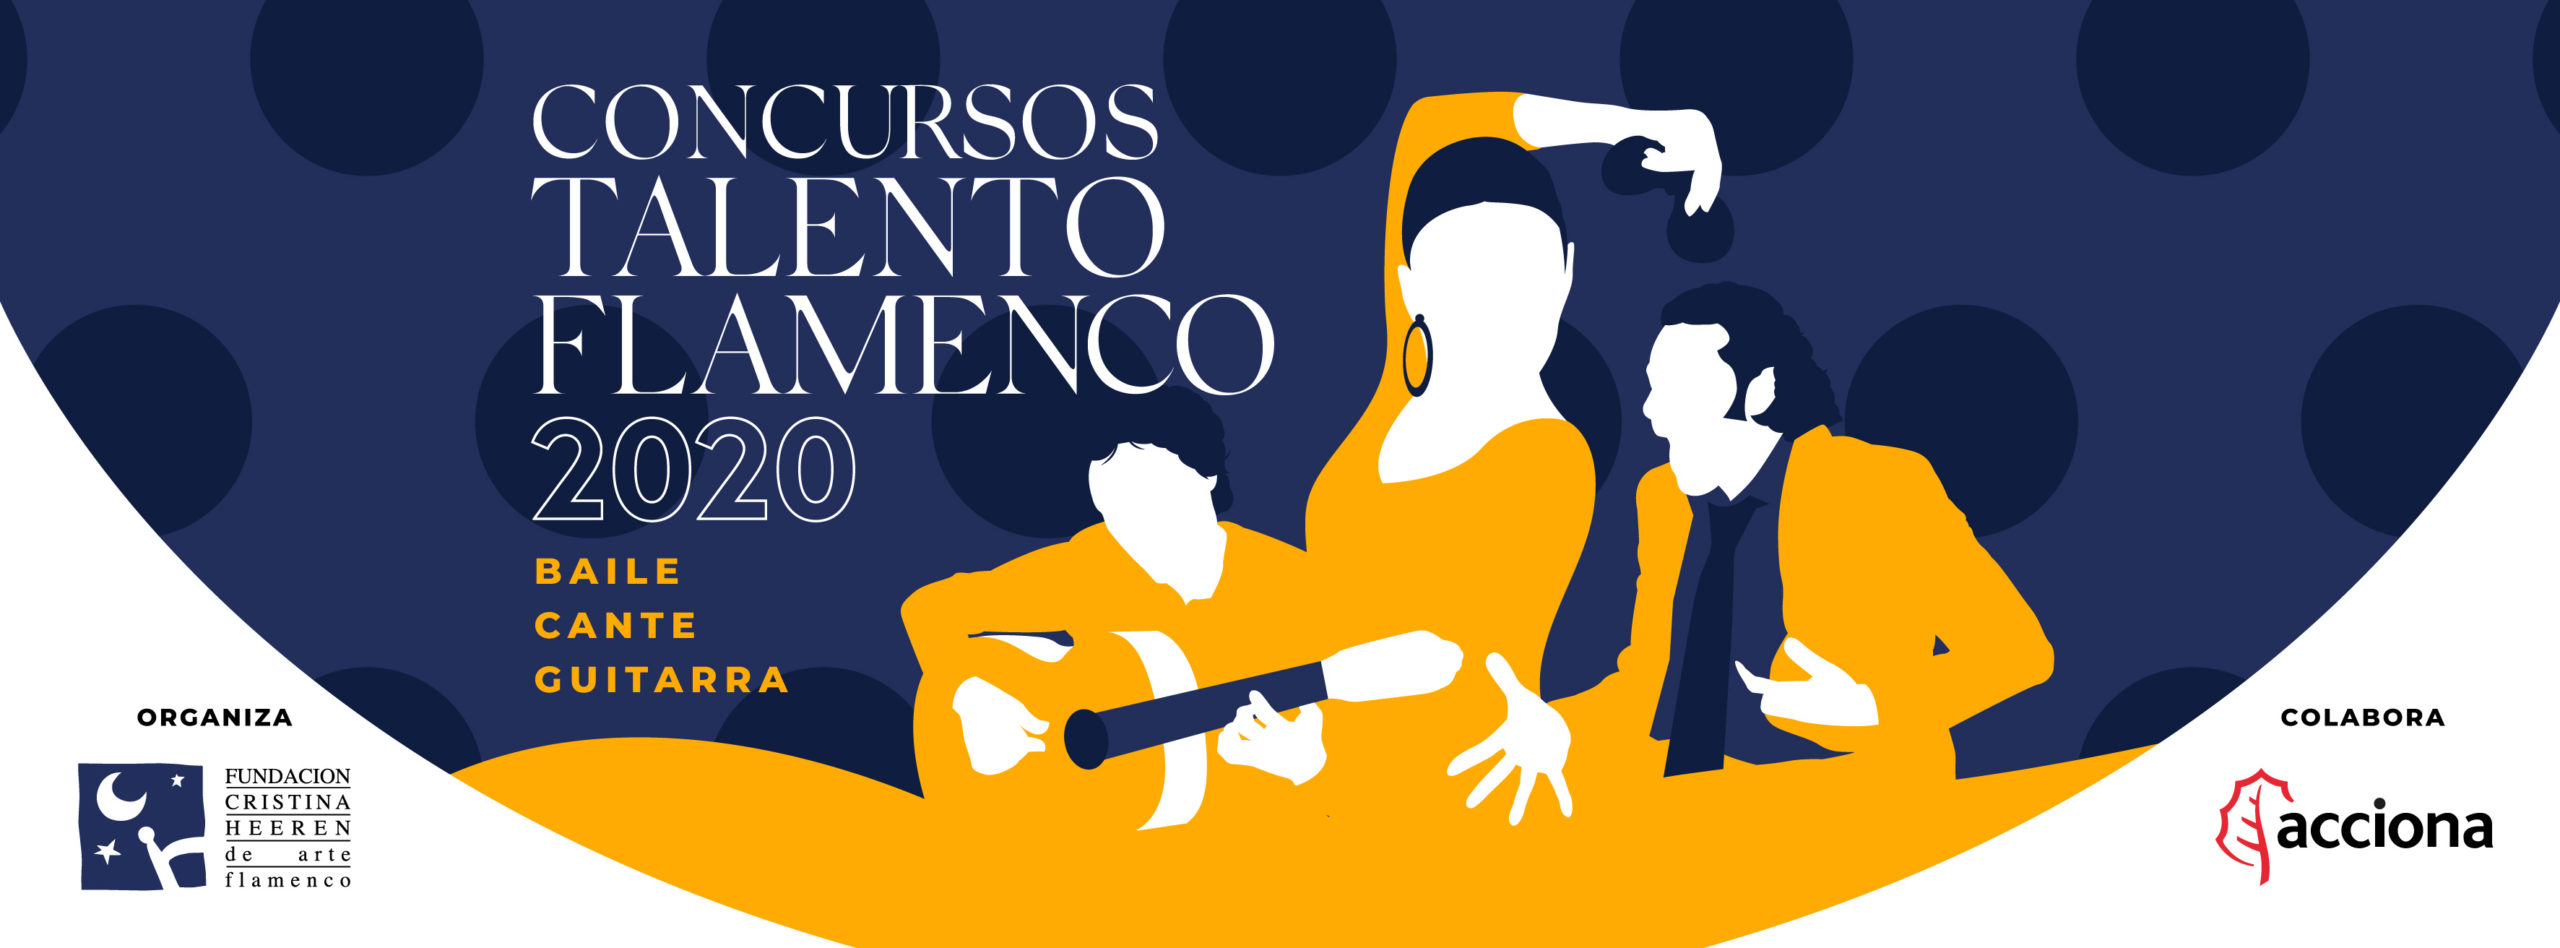 La Fundación Cristina Heeren prepara los ‘Concursos Talento Flamenco 2020’